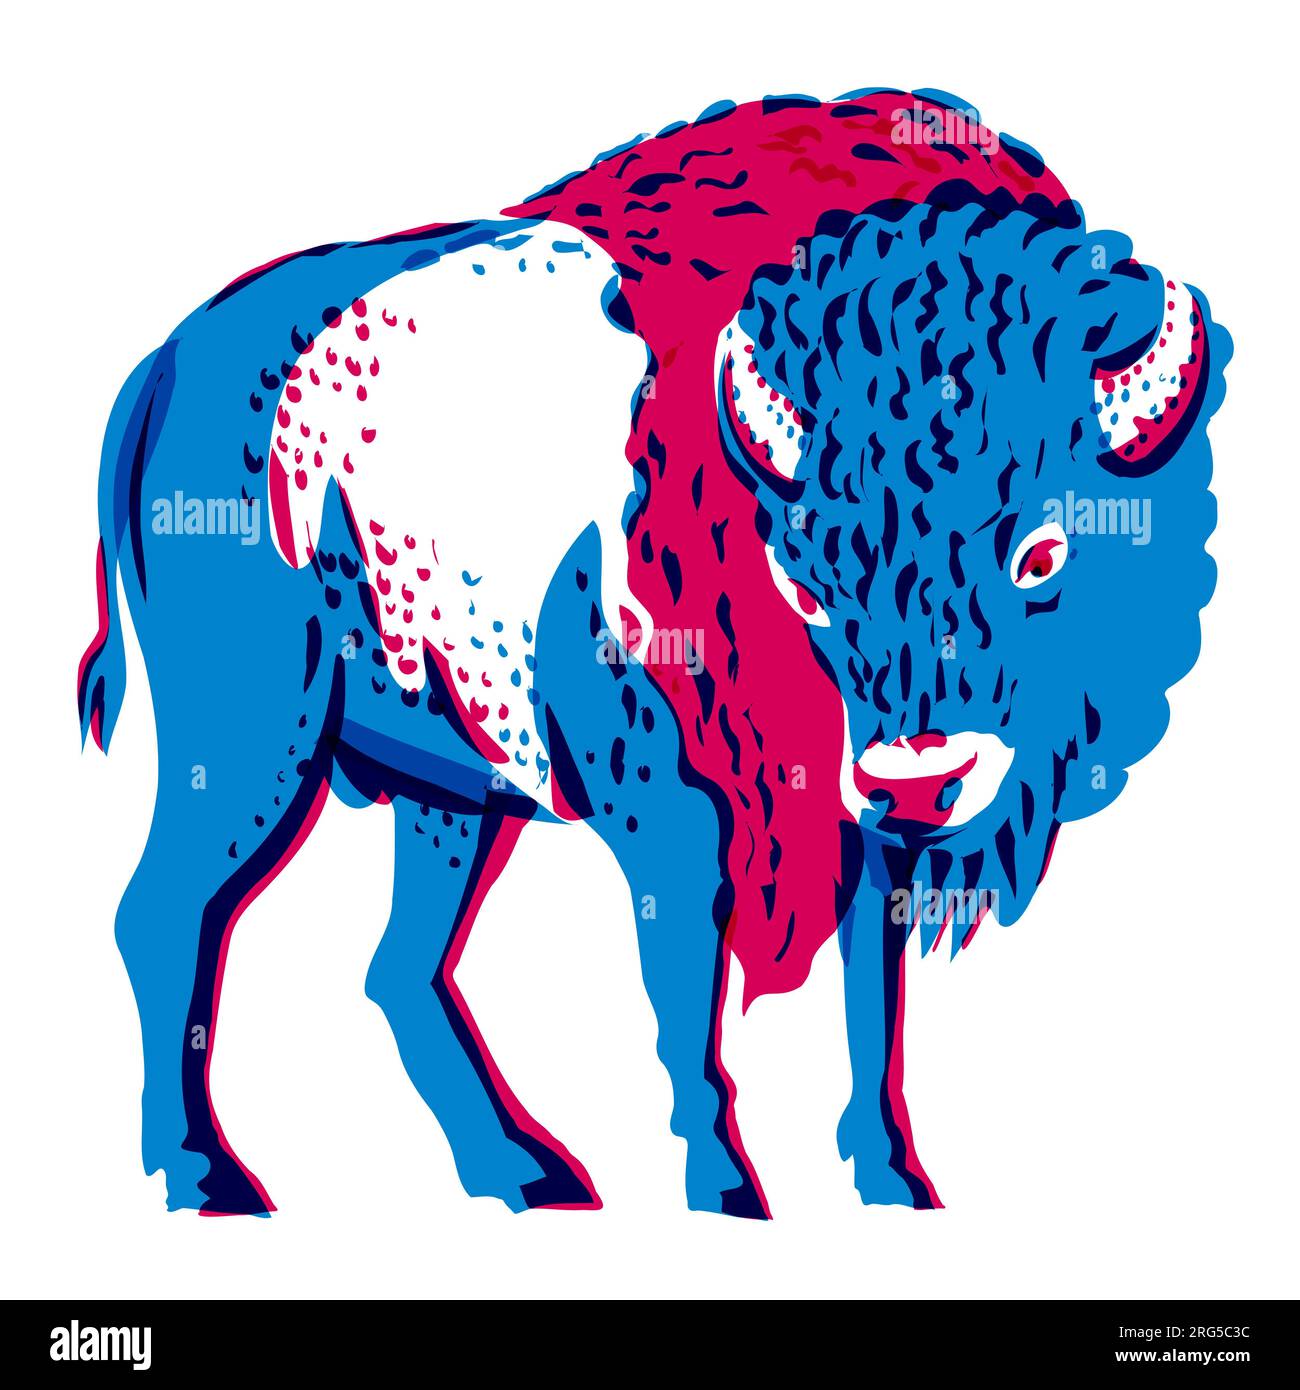 Tecnica di risografia illustrazione di un bisonte americano in piedi visto dal davanti, realizzata in stile di serigrafia digitale con effetto retrò riso. Foto Stock